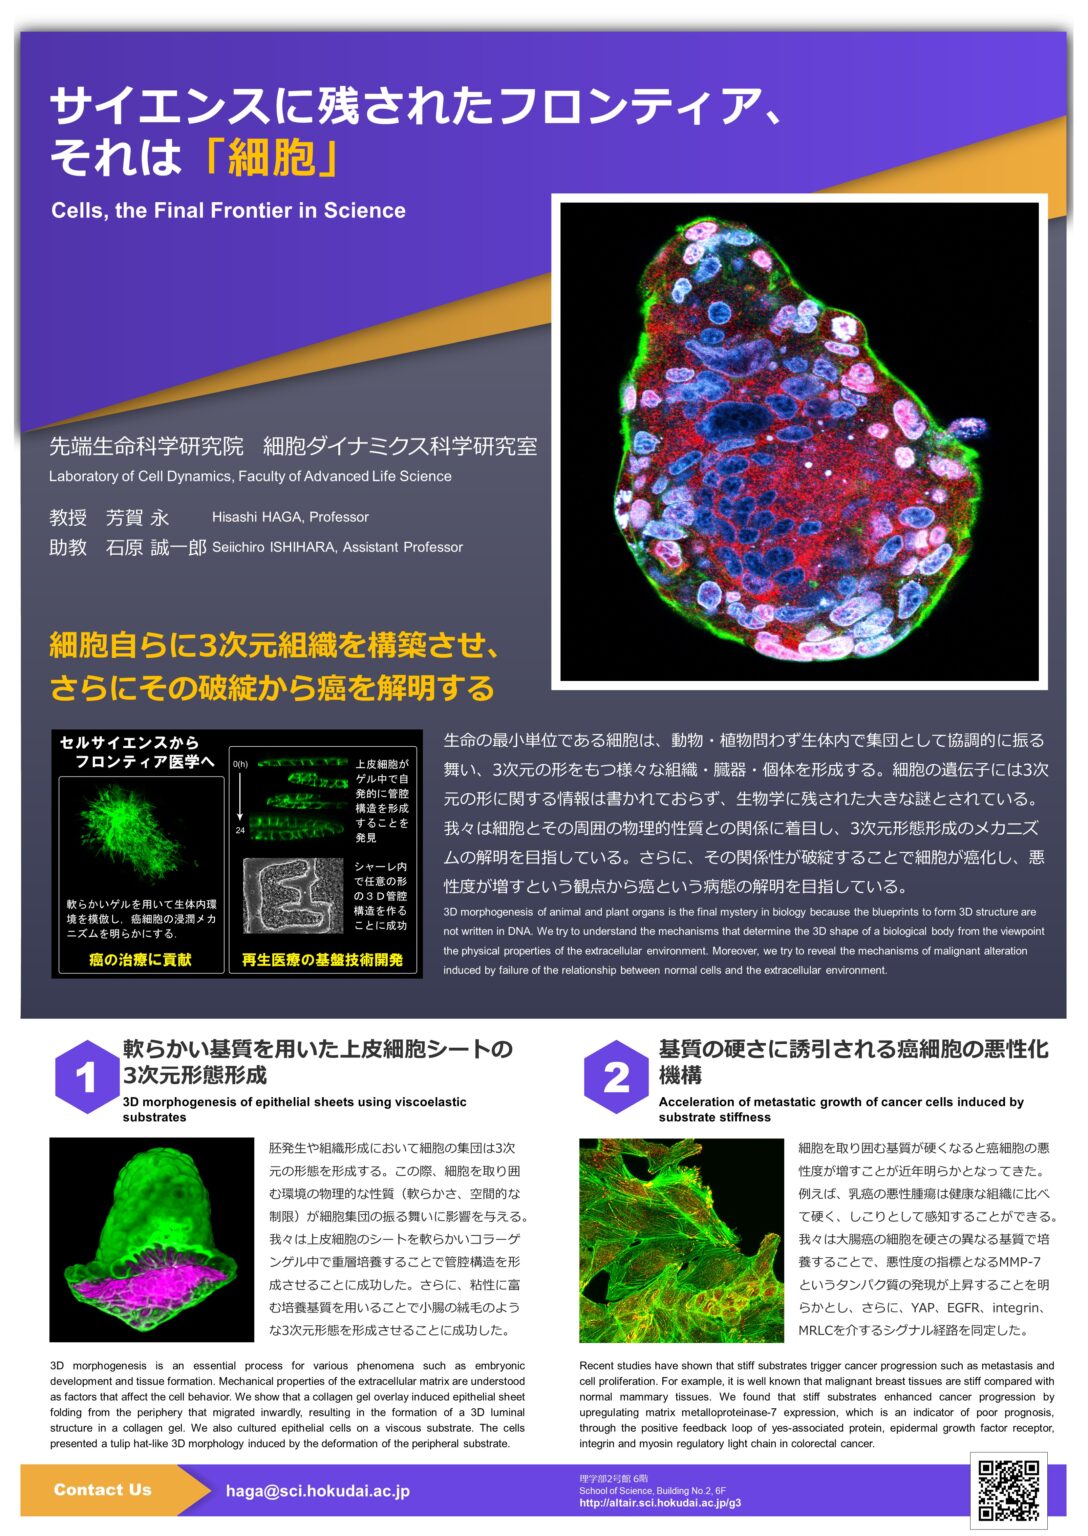 細胞ダイナミクス科学研究室 北海道大学 理学部 生物科学科 高分子機能学